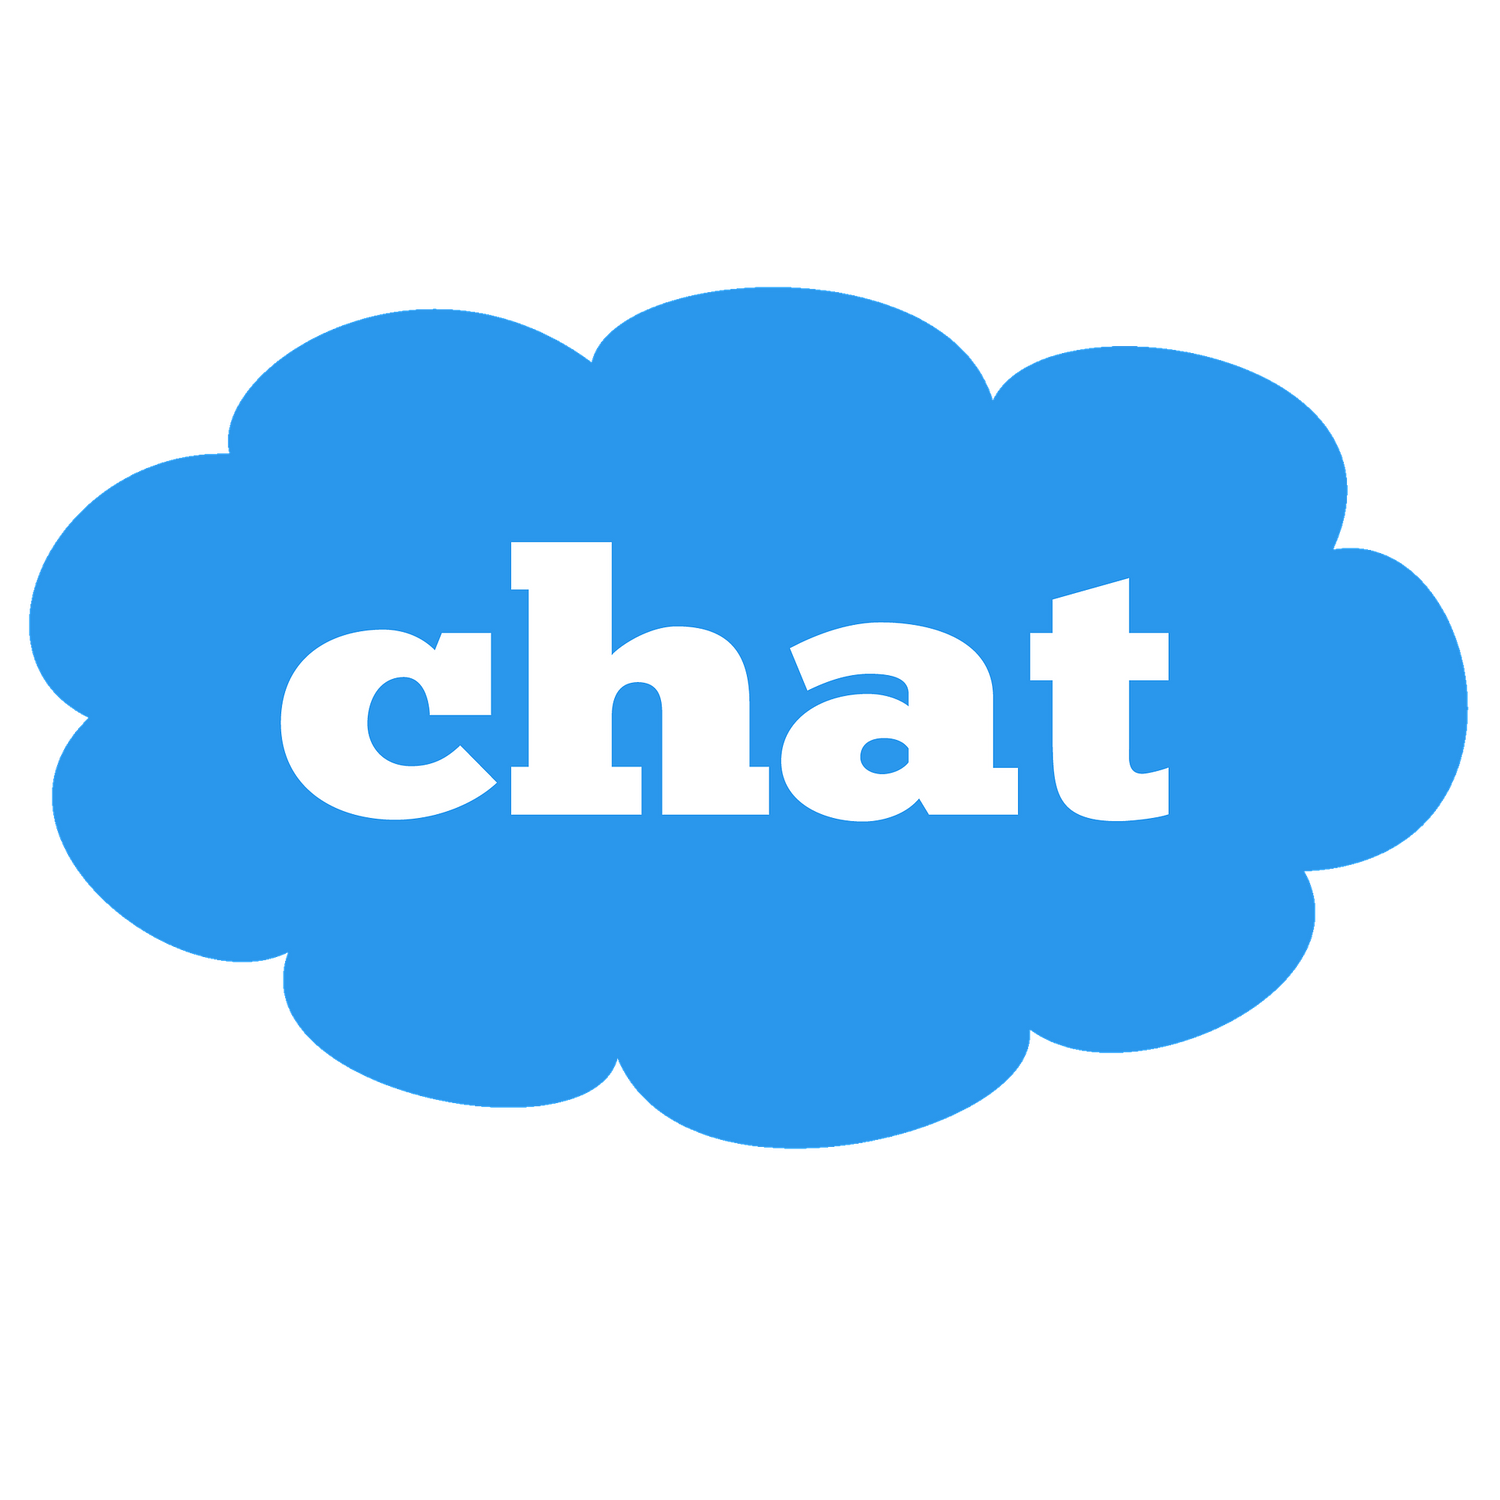 BUFU Hanf & CBD Shop - Live Chat Kontakt - Bild von einer Wolke mit dem Wort "Chat" 